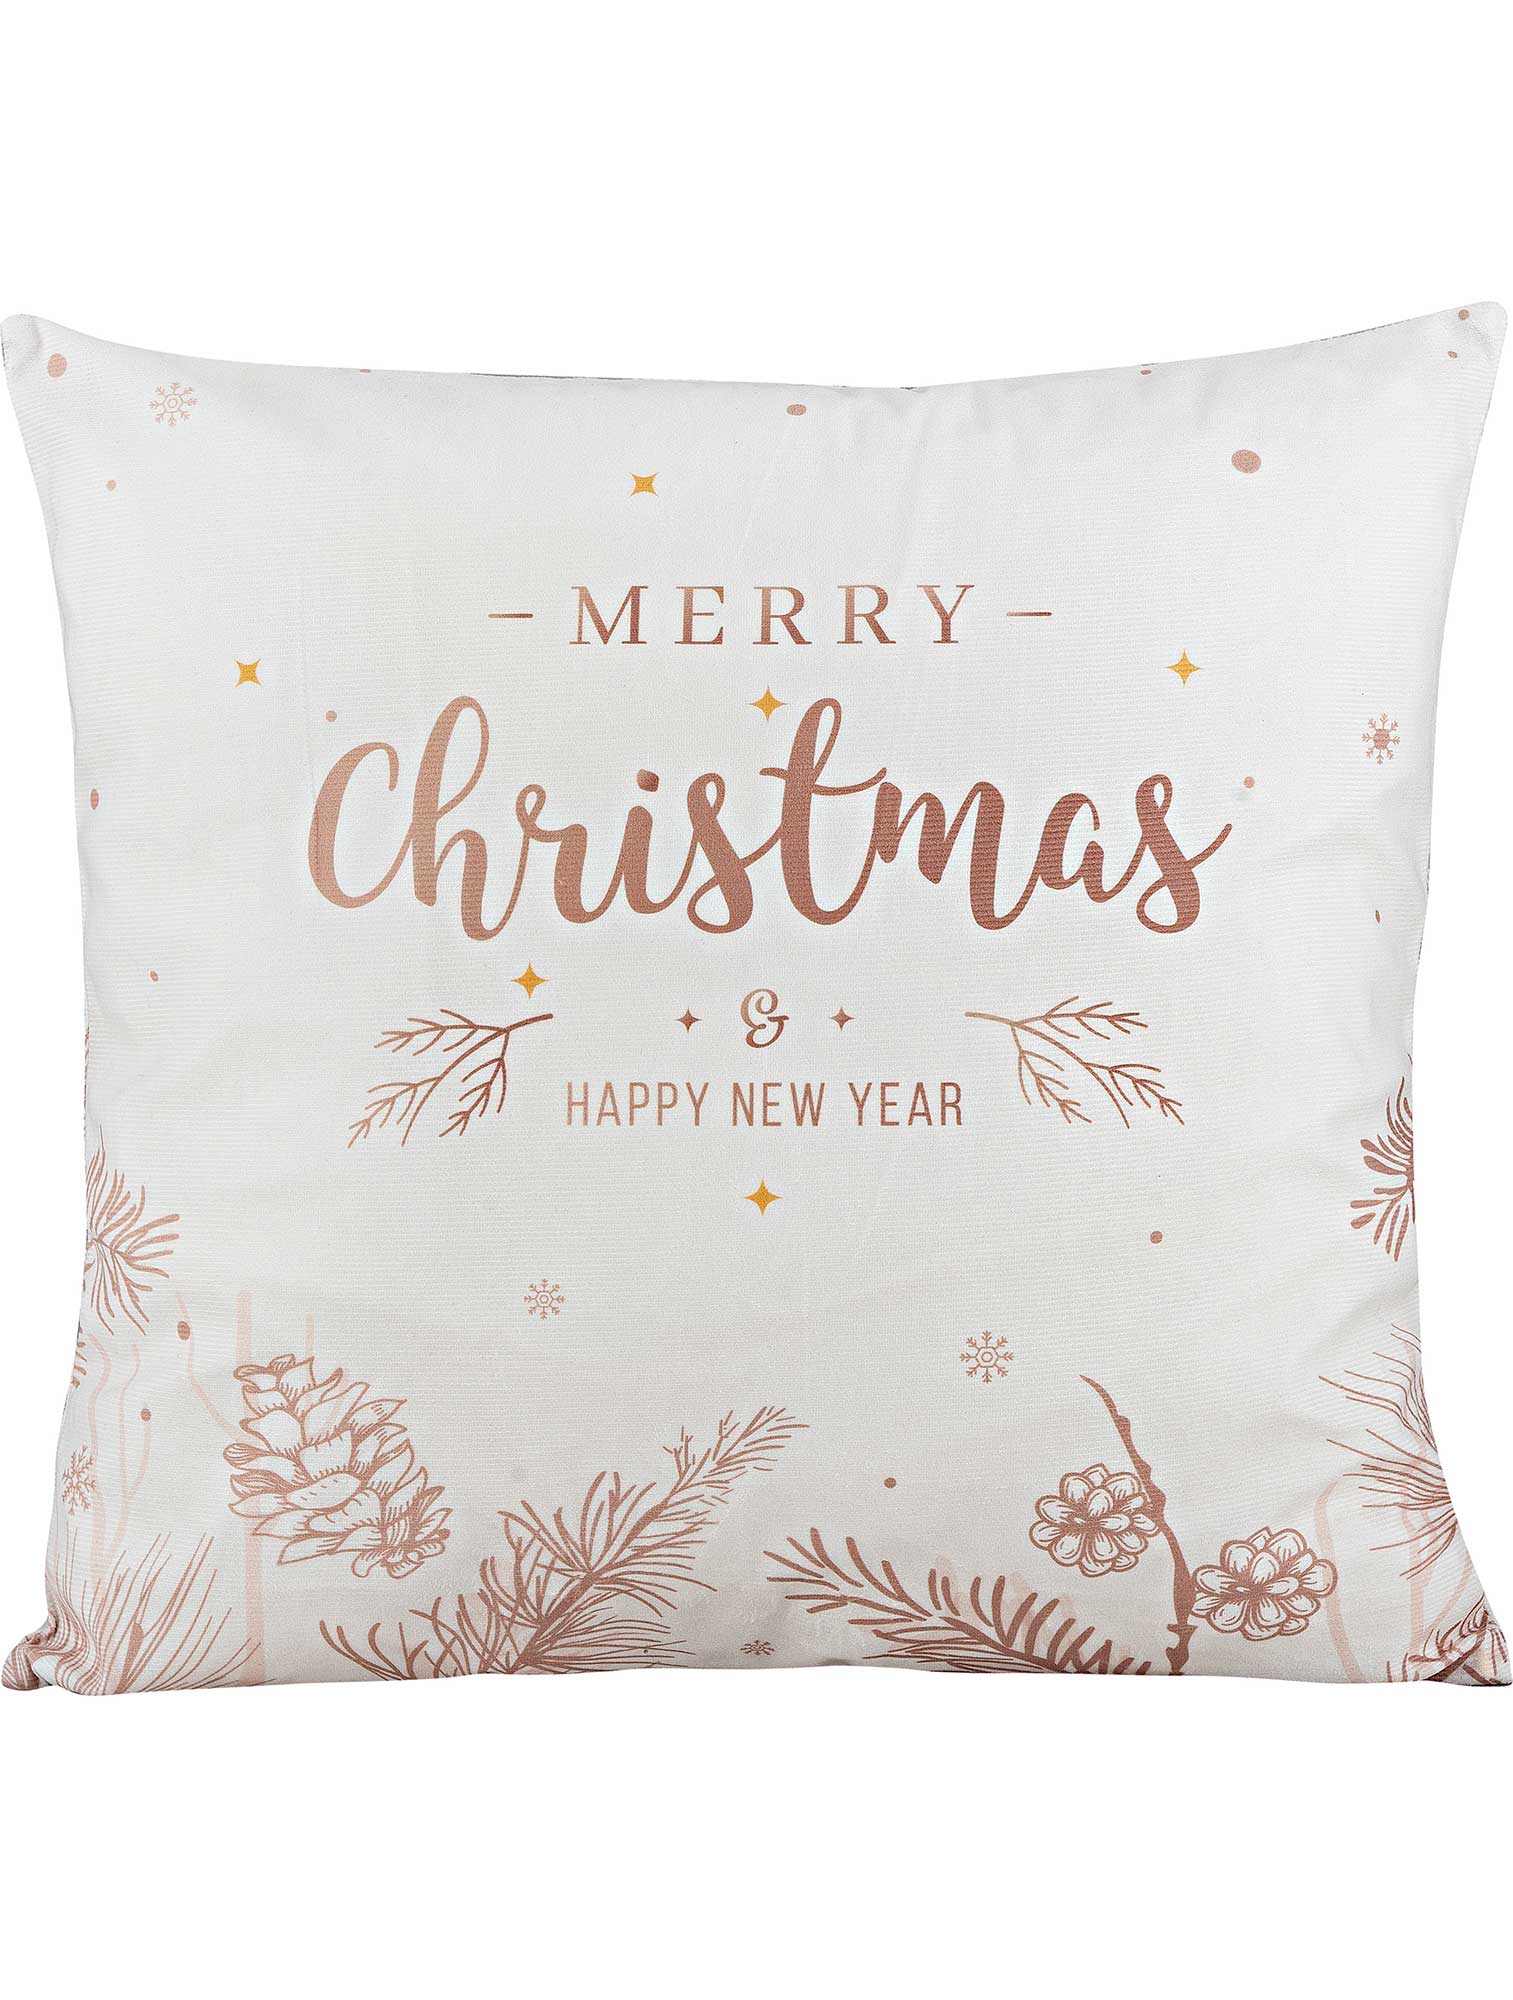 Διακοσμητικό μαξιλάρι MERRY CHRISTMAS από την εταιρεία Madi